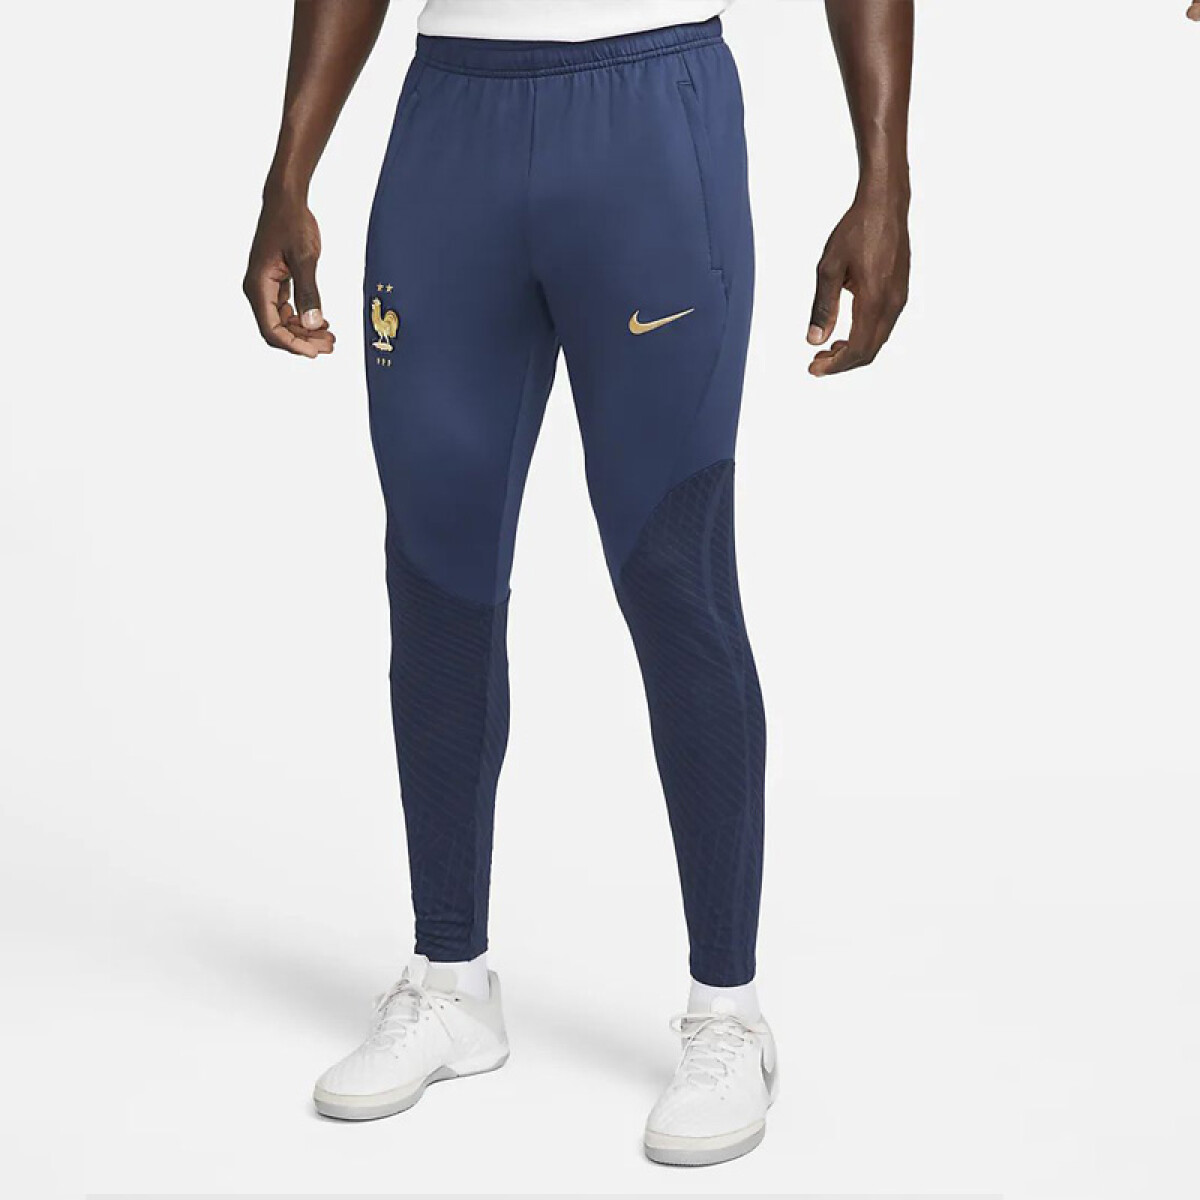 Pantalón Nike Francia Dri-fit Strike 